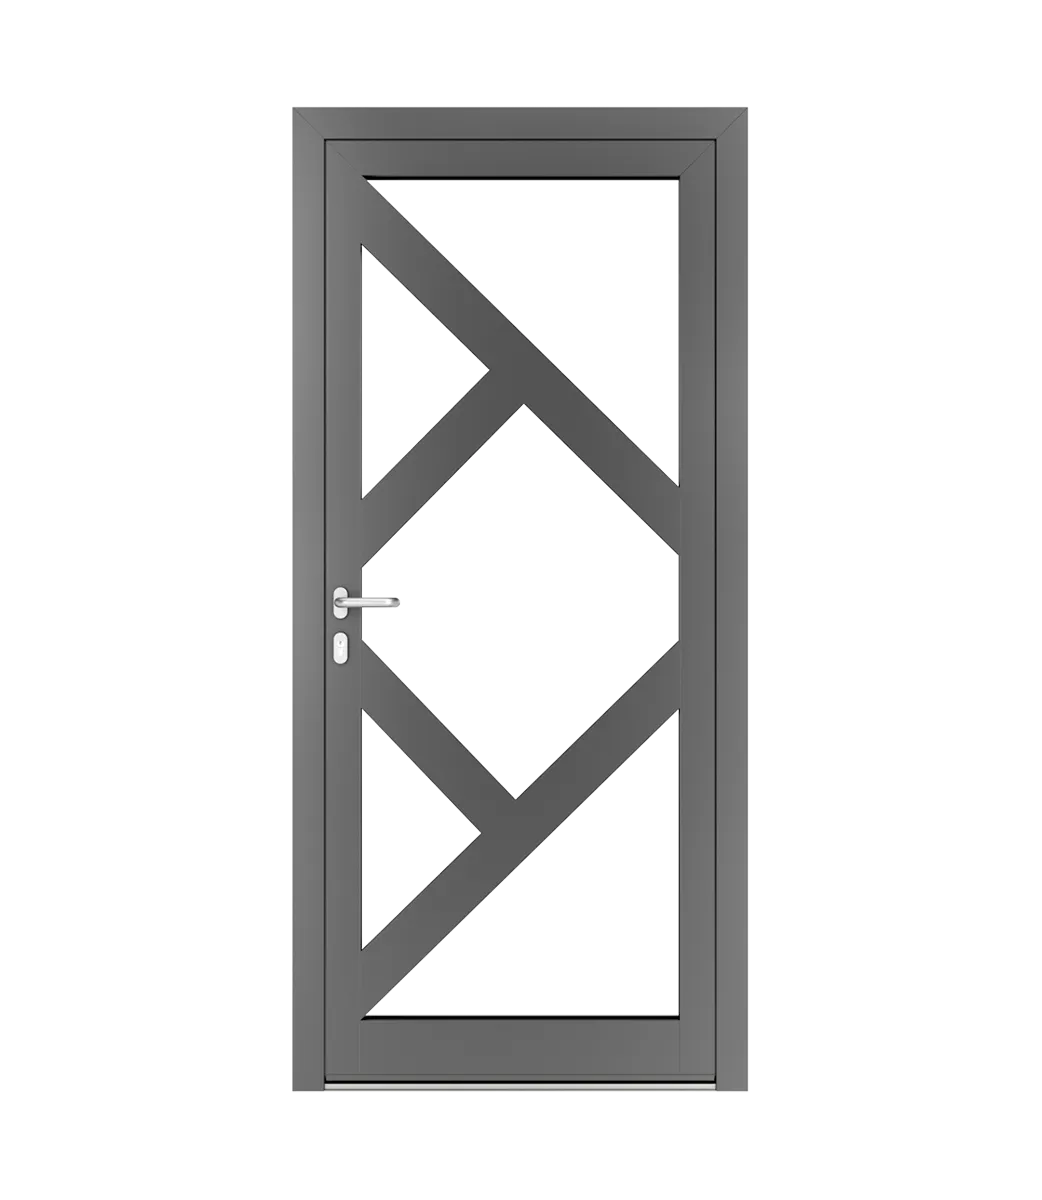 AP Fensterbau, Schnürungen in Aluminiumtüren - Beispiel Nr. 14